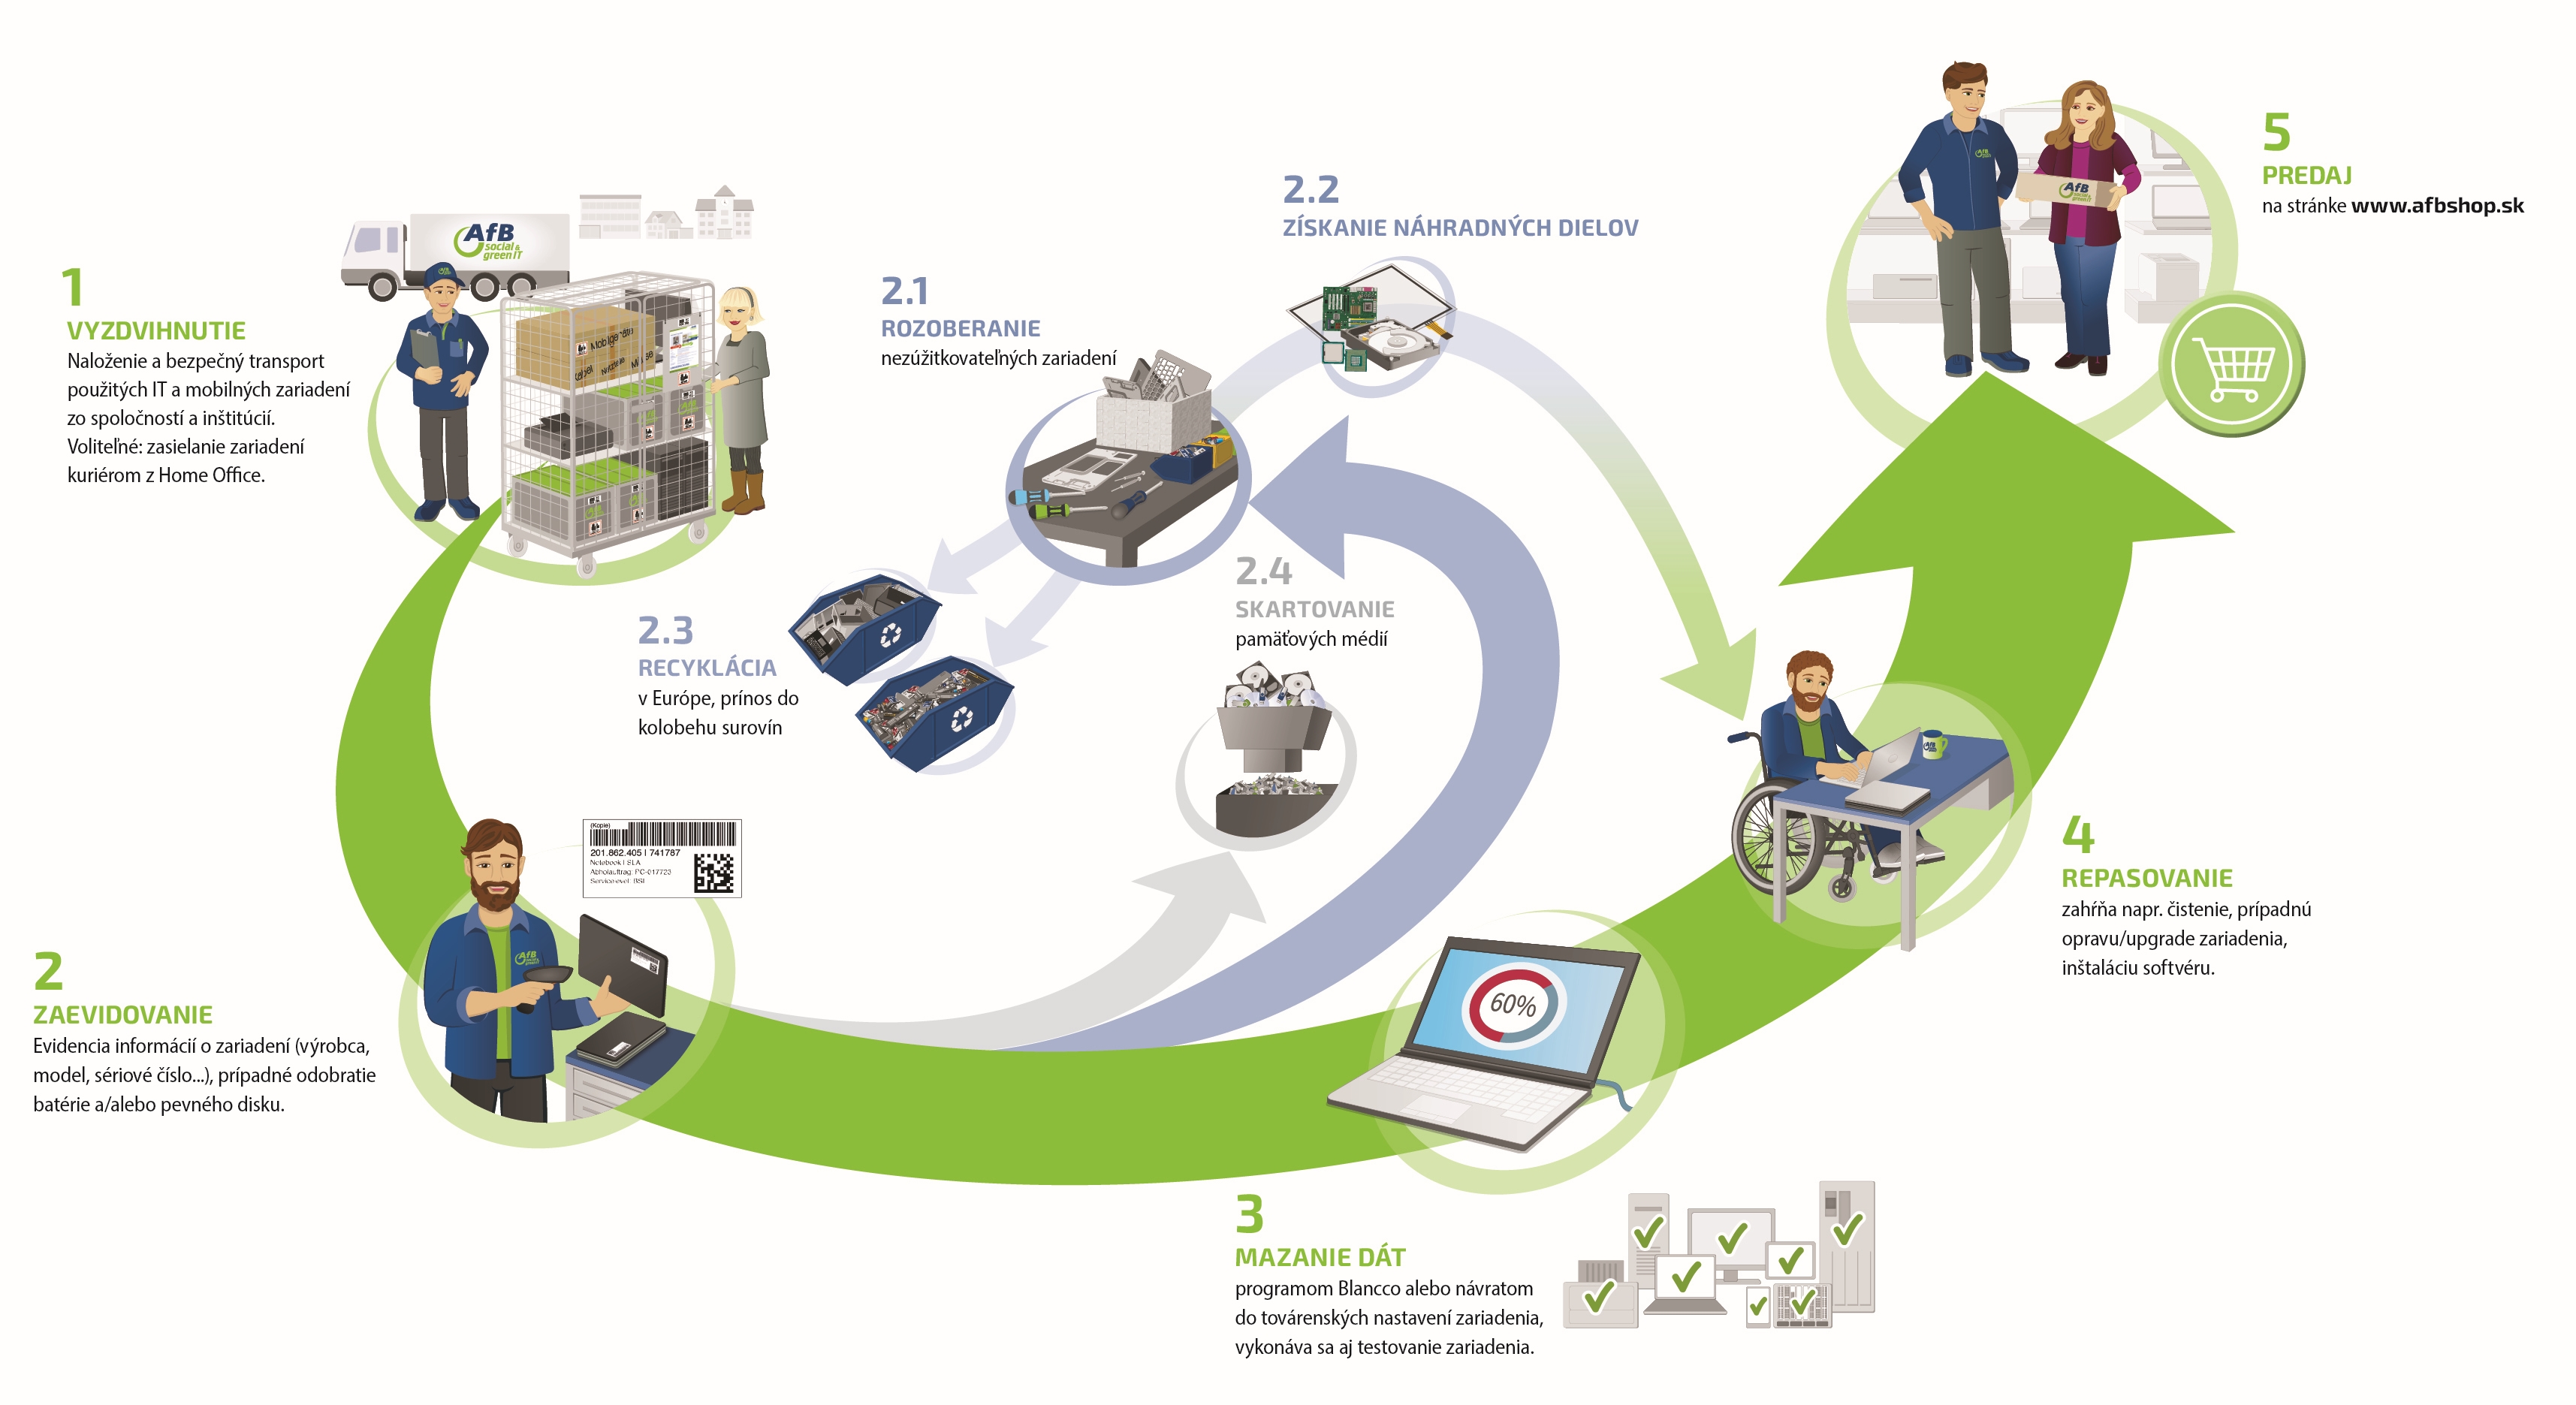 Grafika znázorňujúca proces spracovania zariadení v AfB